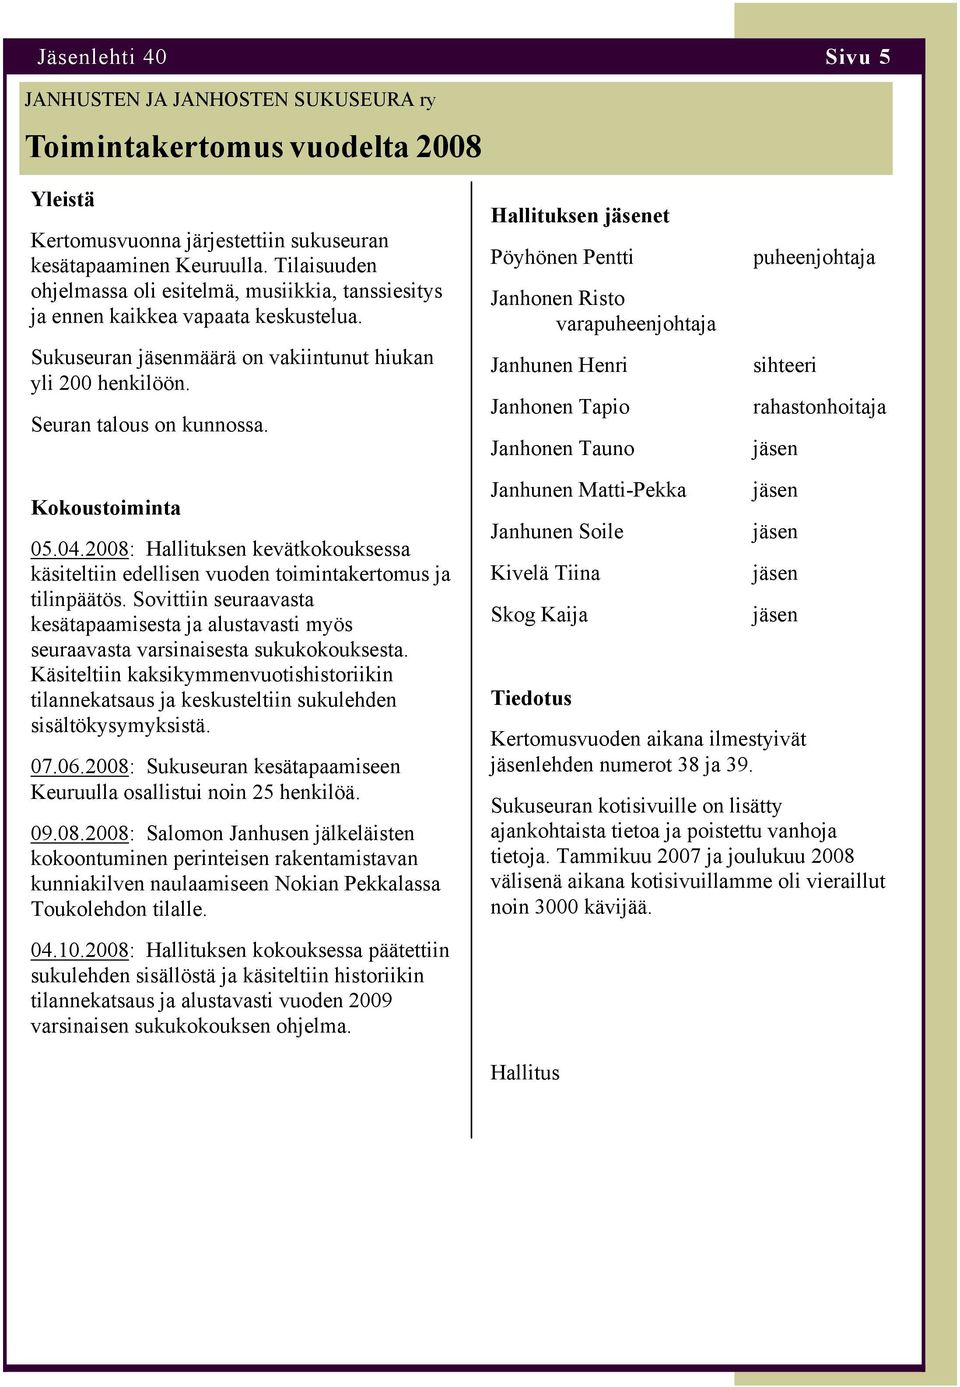 Hallituksen jäsenet Pöyhönen Pentti Janhonen Risto varapuheenjohtaja Janhunen Henri Janhonen Tapio Janhonen Tauno puheenjohtaja sihteeri rahastonhoitaja jäsen Kokoustoiminta 05.04.